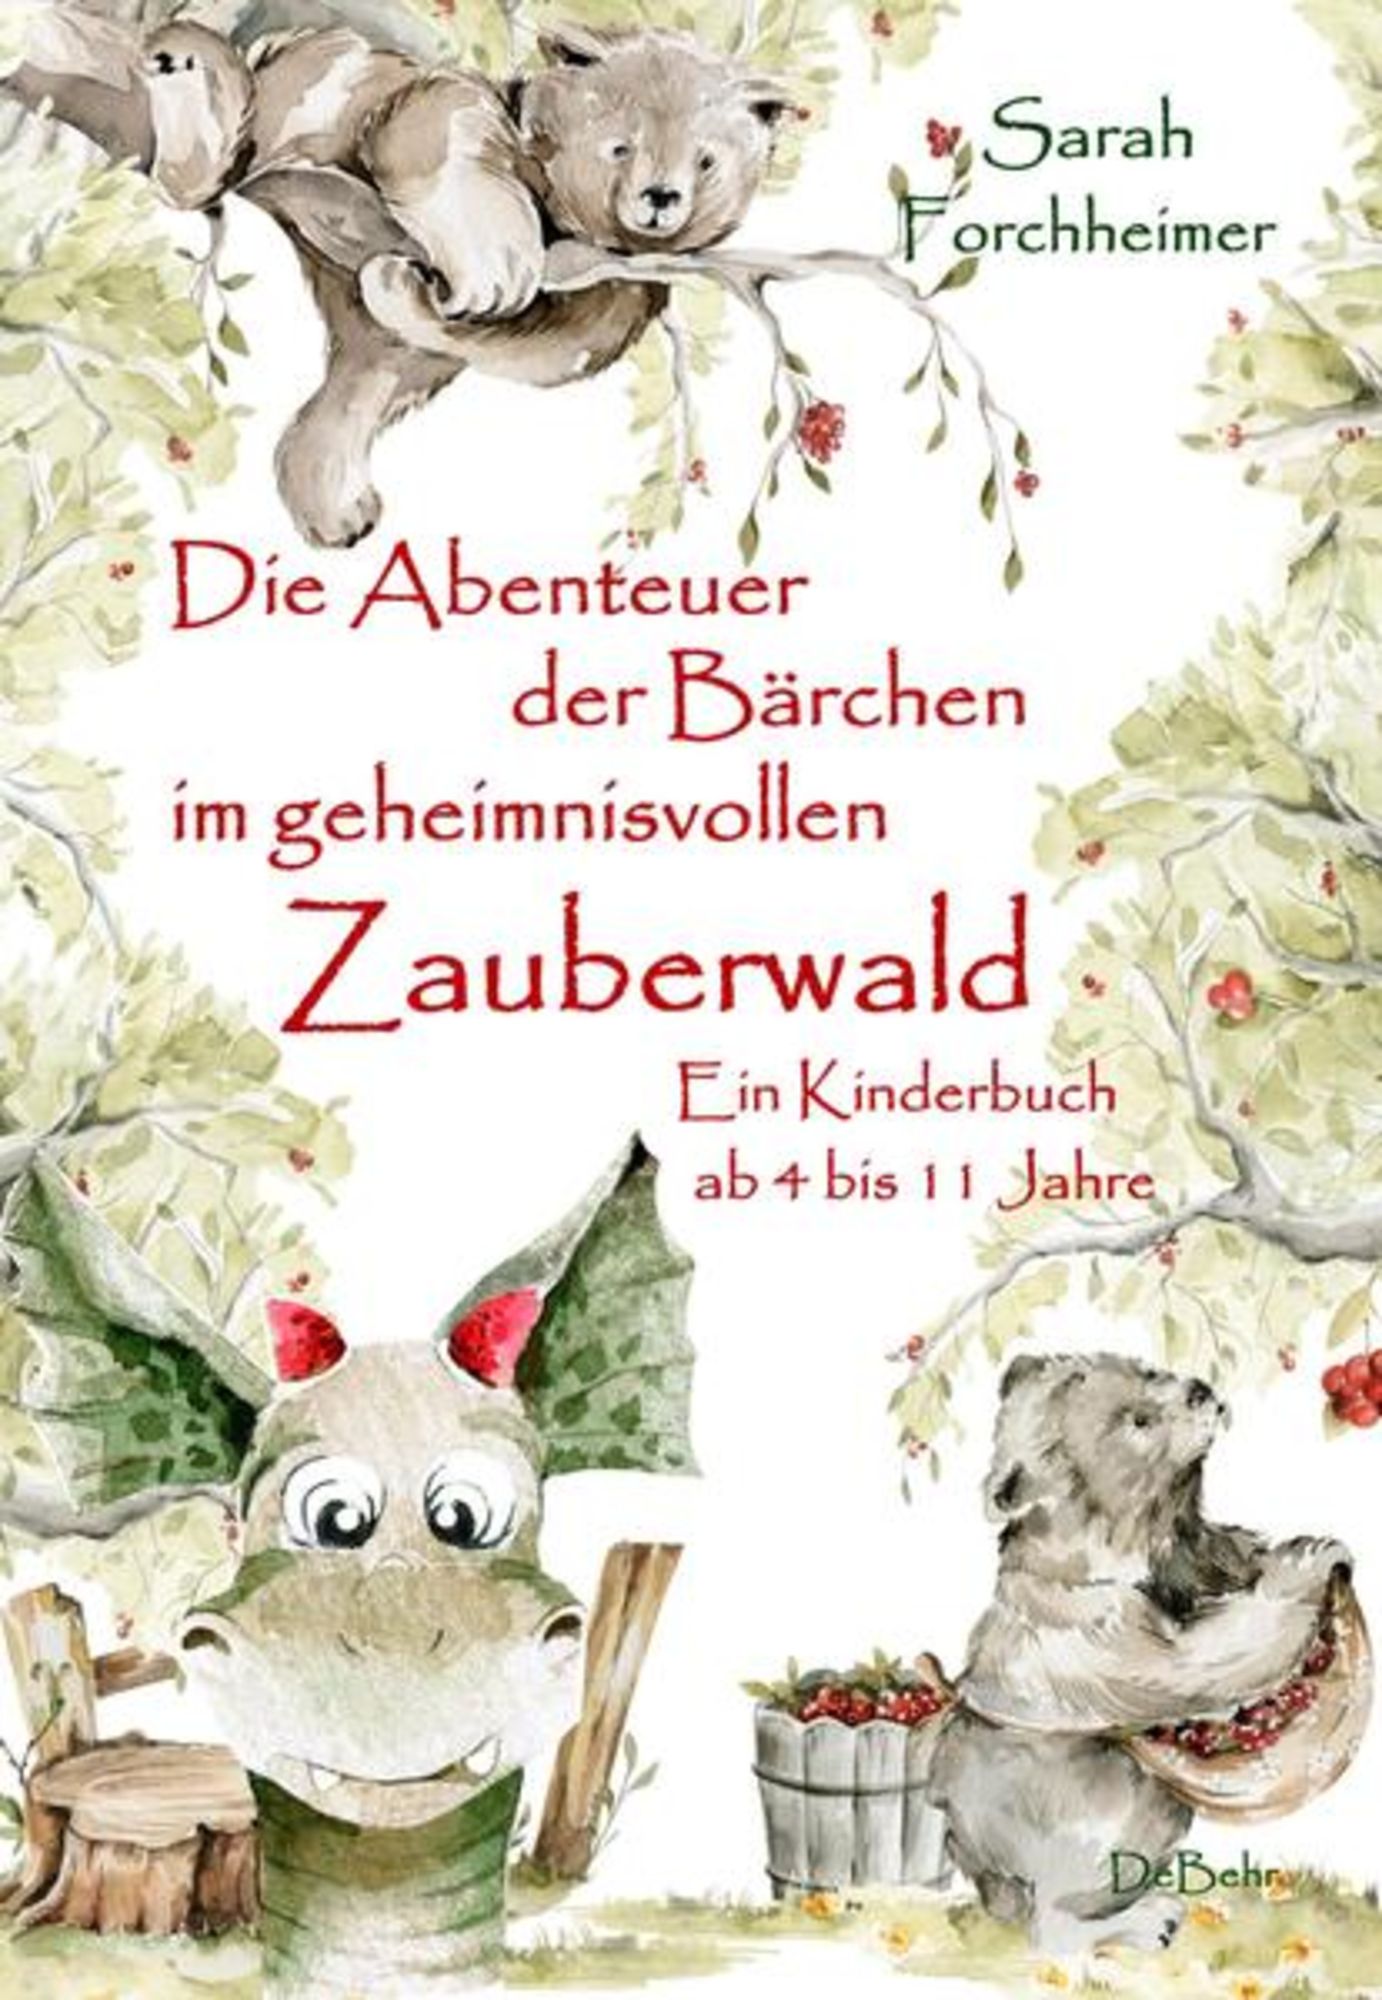 Abenteuer Jahre\' von Zauberwald ab Bärchen Forchheimer\' 4 im 11 bis - Ein \'Sarah - Die \'978-3-9872702-1-5\' geheimnisvollen Buch - der Kinderbuch